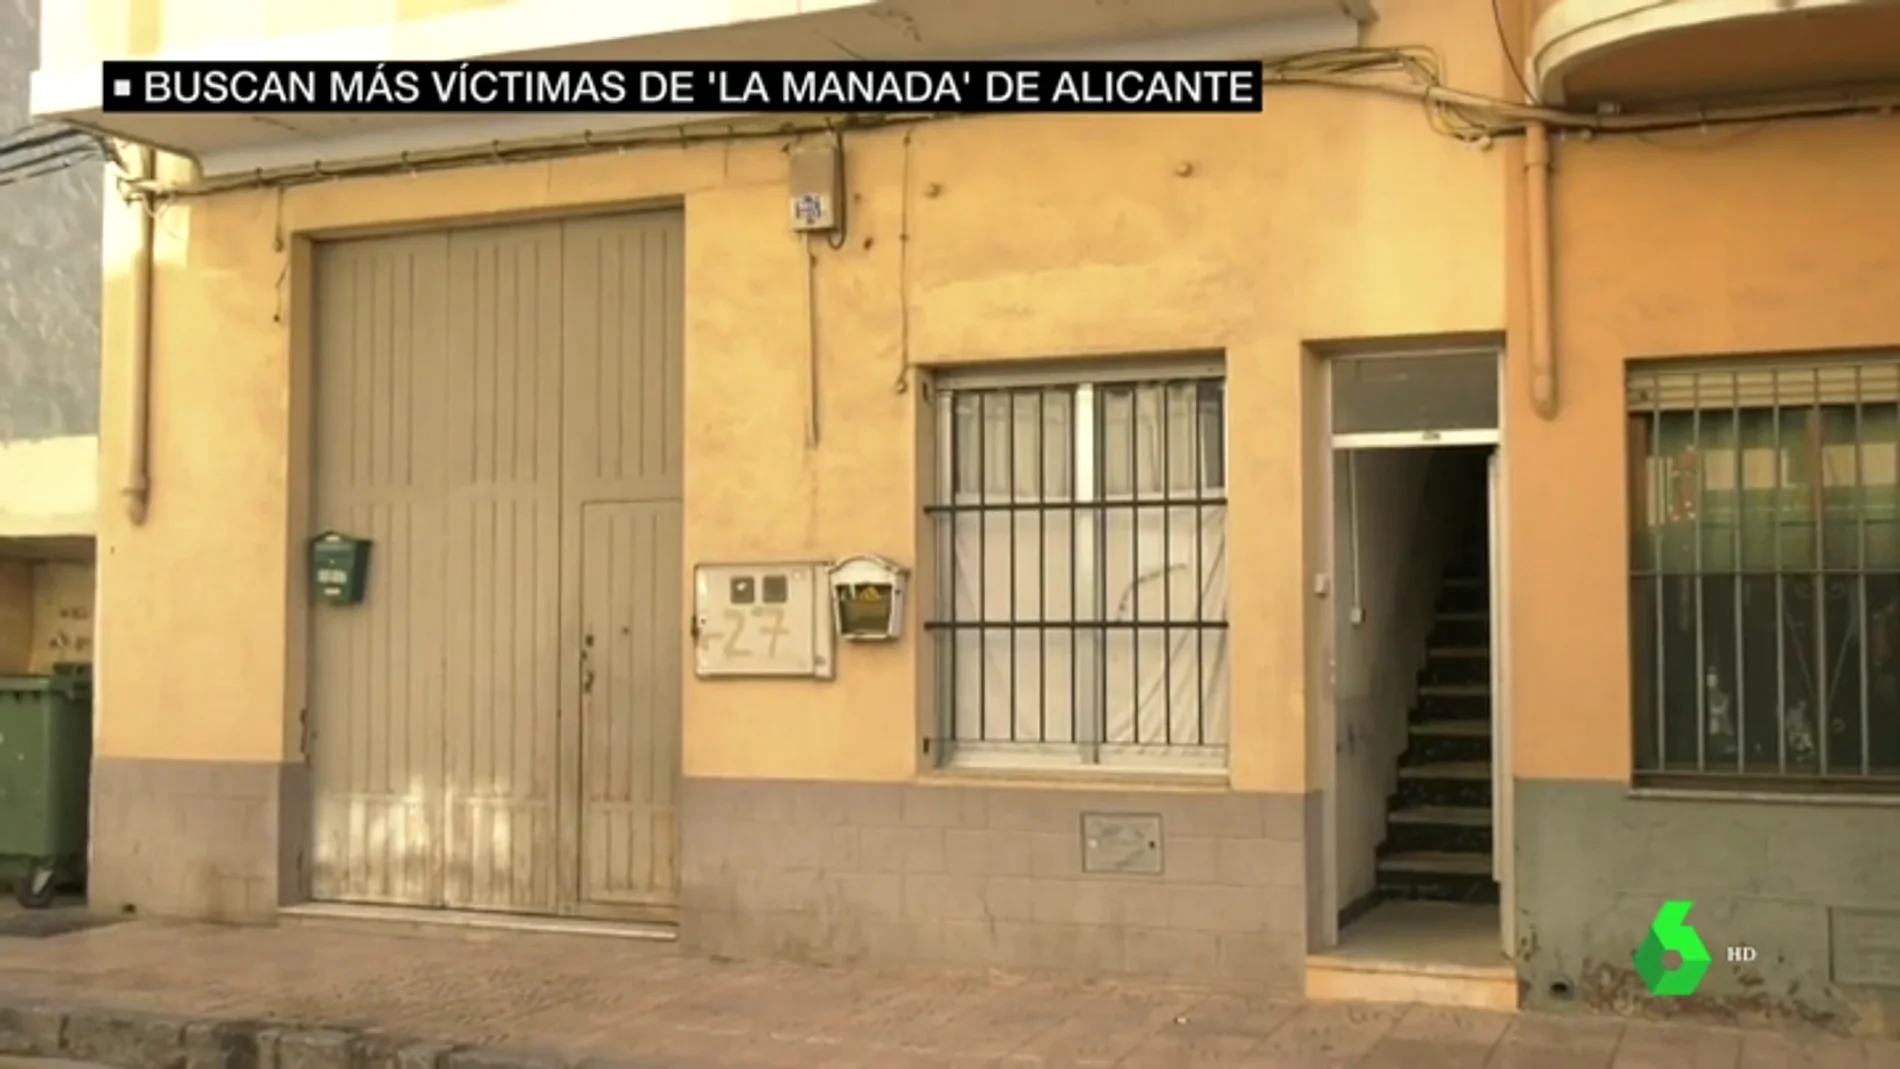 'La Manada' de Alicante grabó cinco minutos de vídeo de la agresión sexual con "imágenes explícitas"